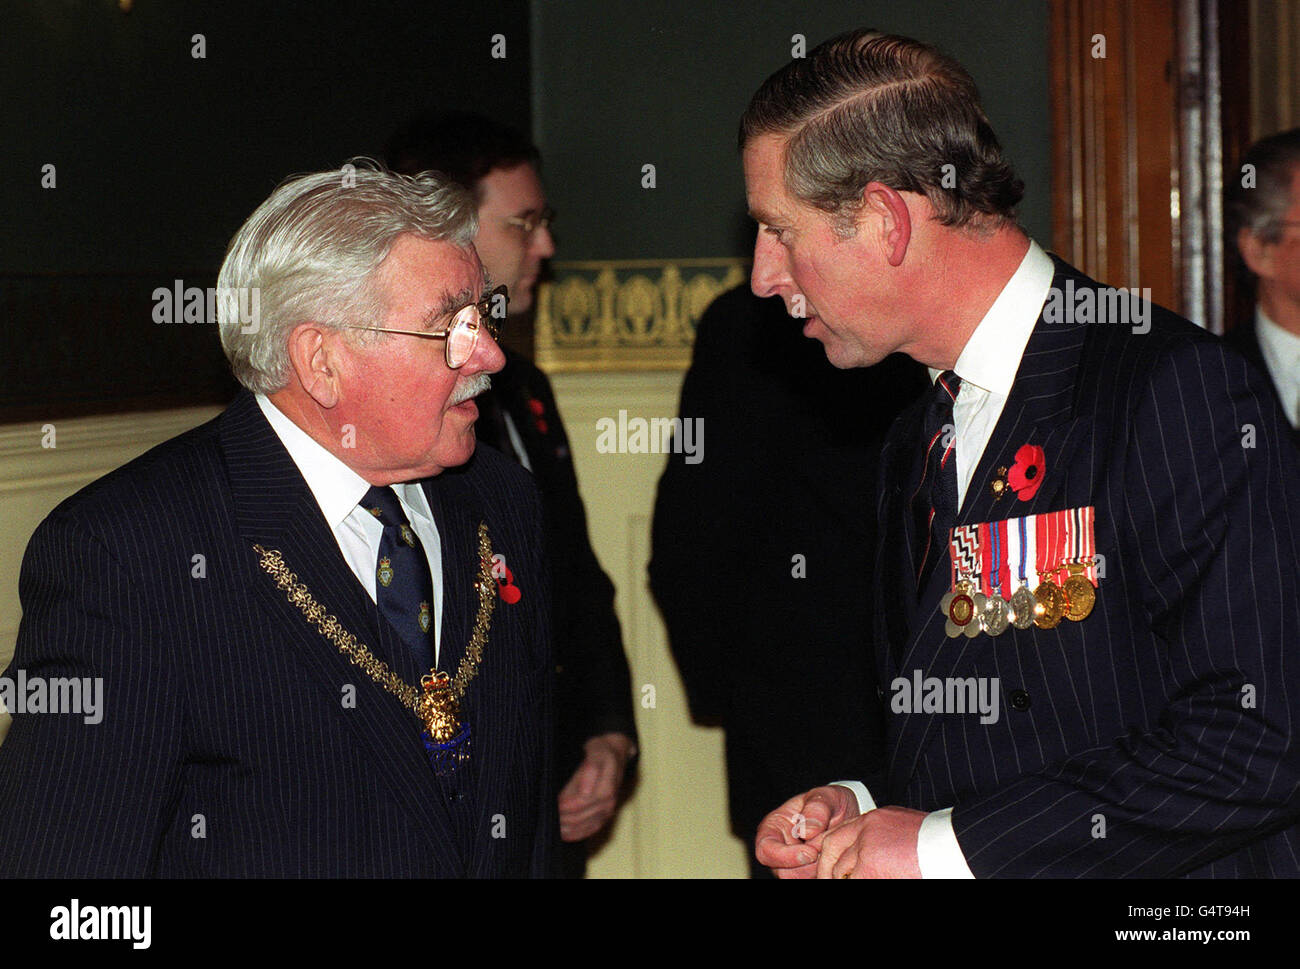 Le Prince de Galles s'entretient avec le président national de la Légion royale britannique John champ, lors d'un festival du souvenir à ceux qui sont tombés dans les guerres du XXe siècle au Royal Albert Hall de Londres. Banque D'Images